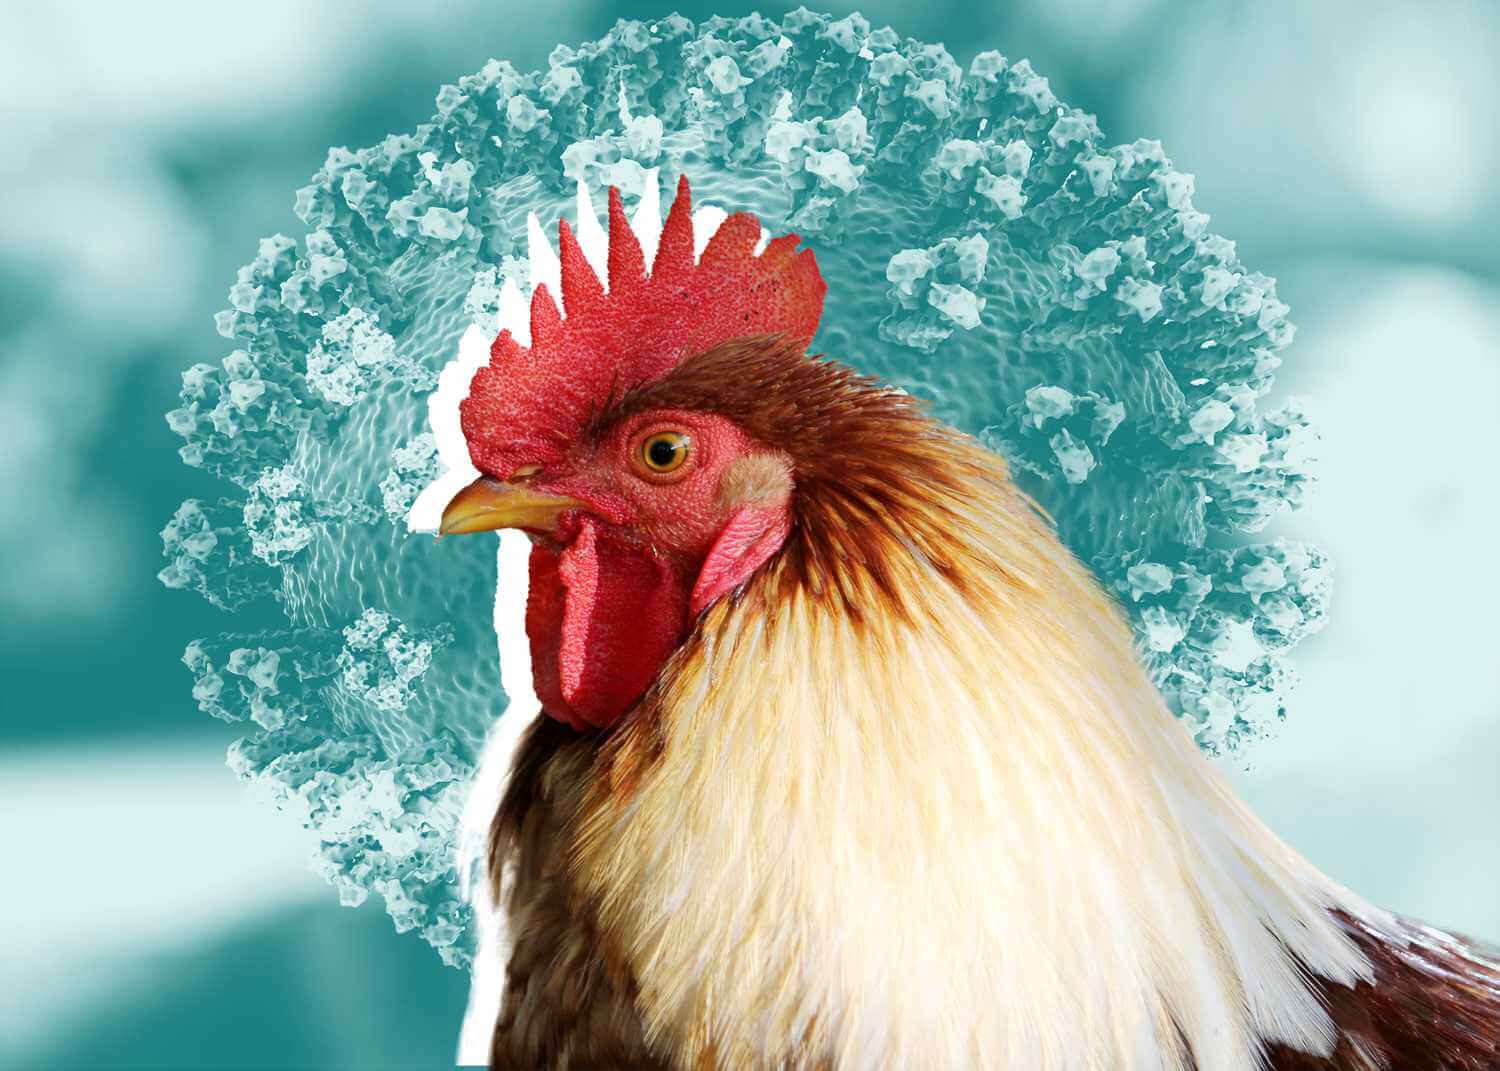 Мутации вируса гриппа. Так называемая чума птиц (птичий грипп) выкашивает пернатых давно, но выделить вирус удалось лишь в 1878 году. Фото.